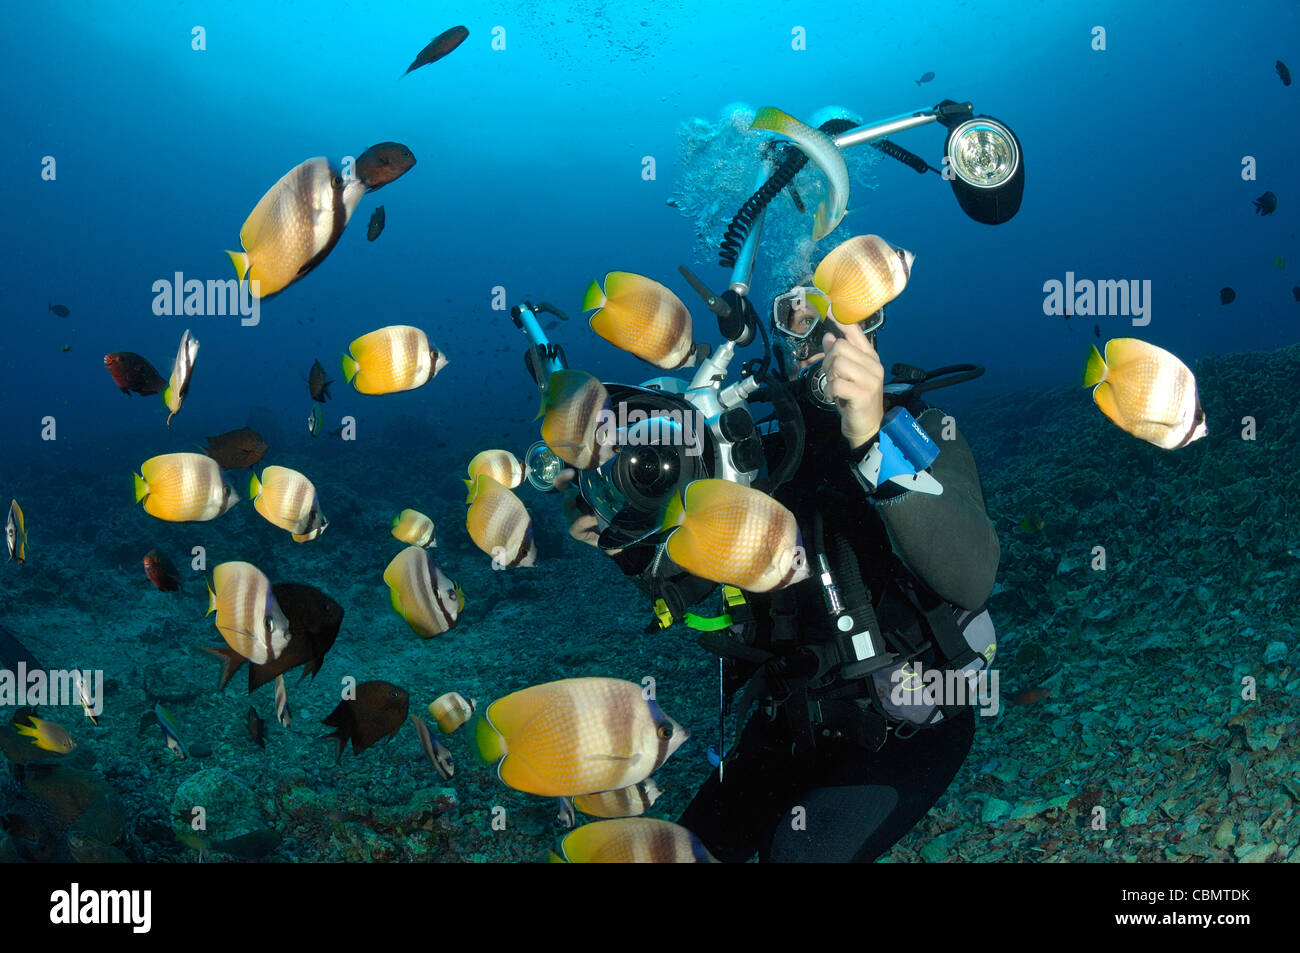 Photographier en plongée autonome, Chaetodon kleinii médiocre, Bunaken, Mer de Célèbes, Indonésie Banque D'Images